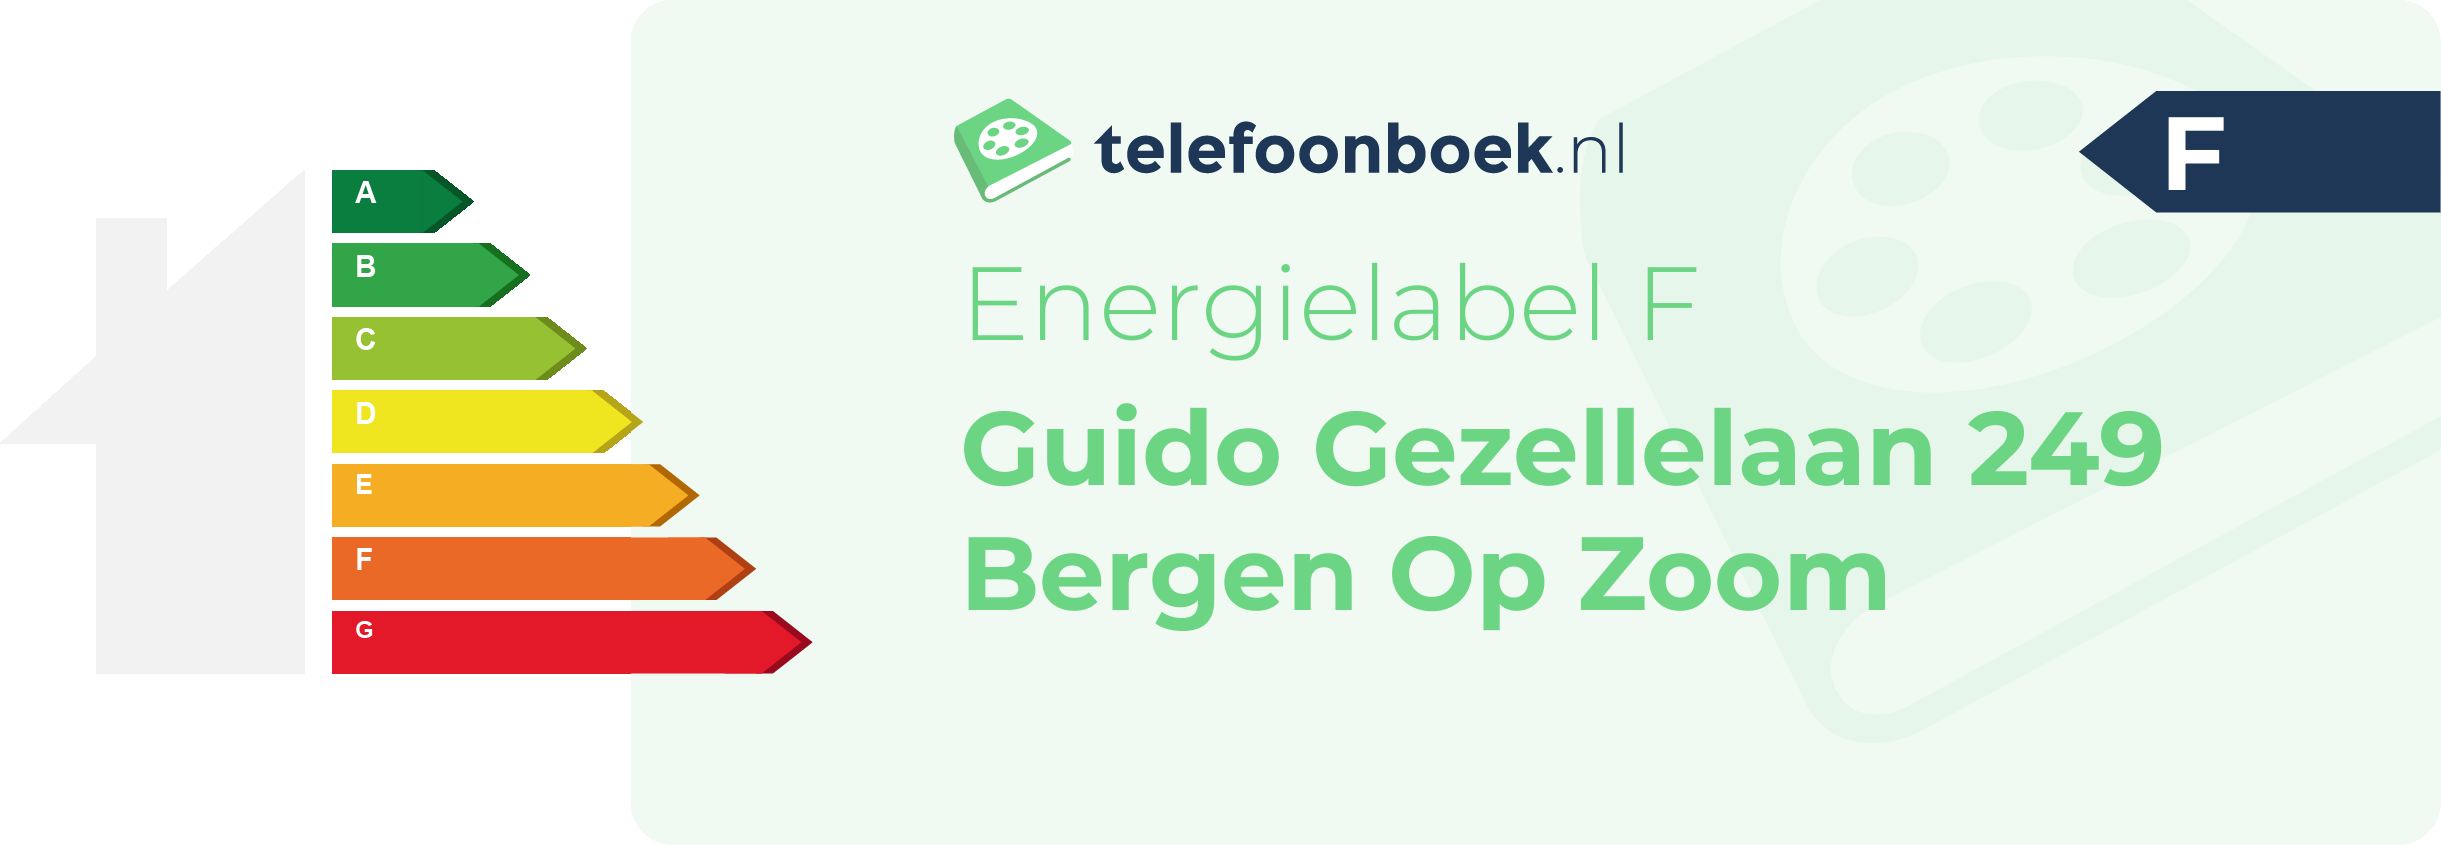 Energielabel Guido Gezellelaan 249 Bergen Op Zoom